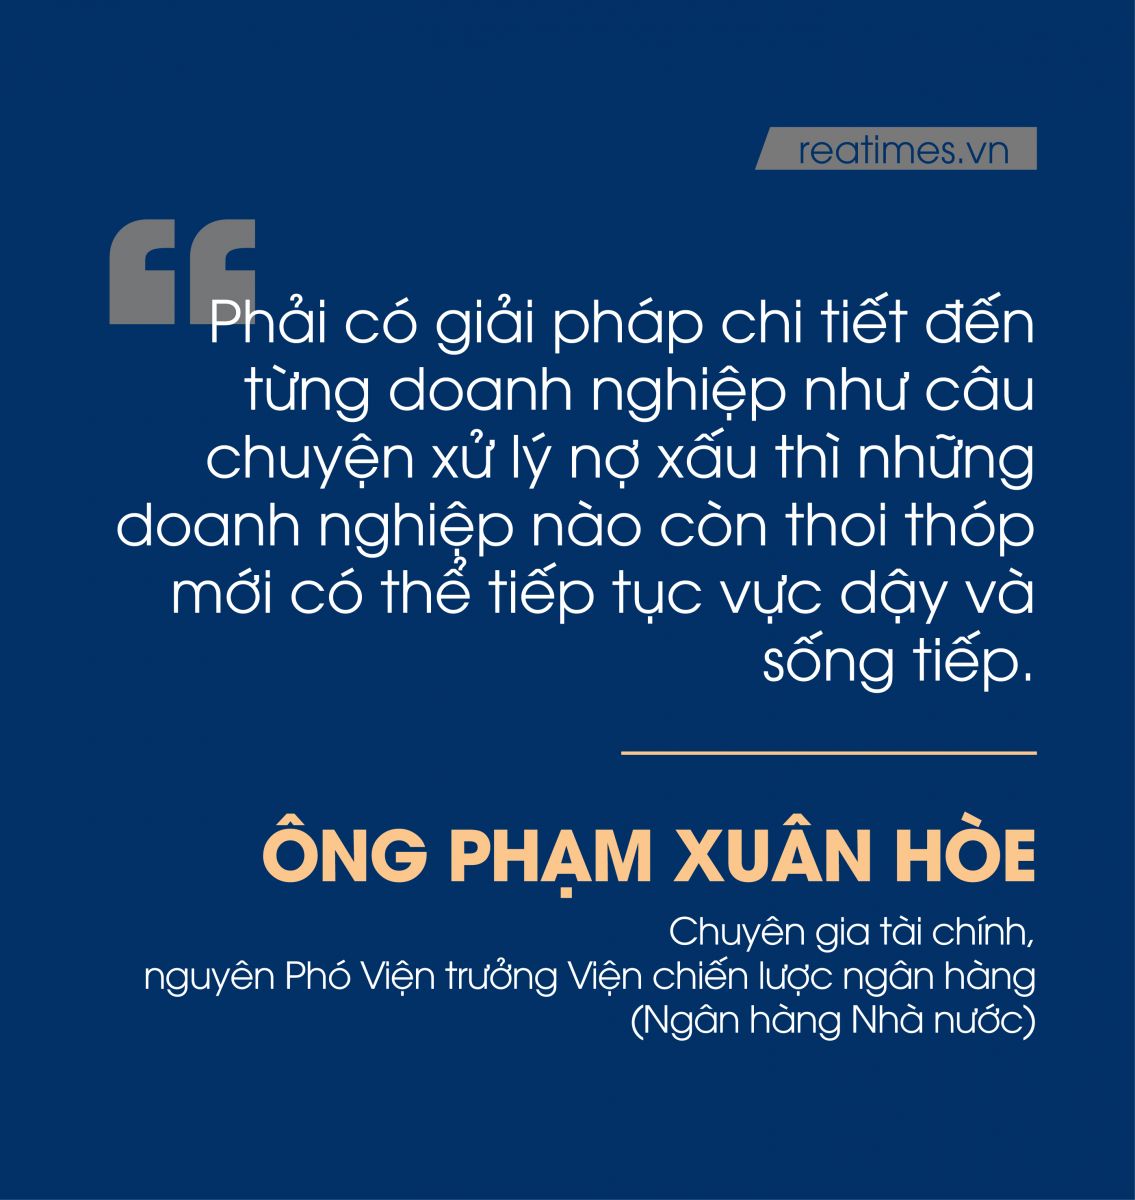 ông Phạm Xuân Hòe